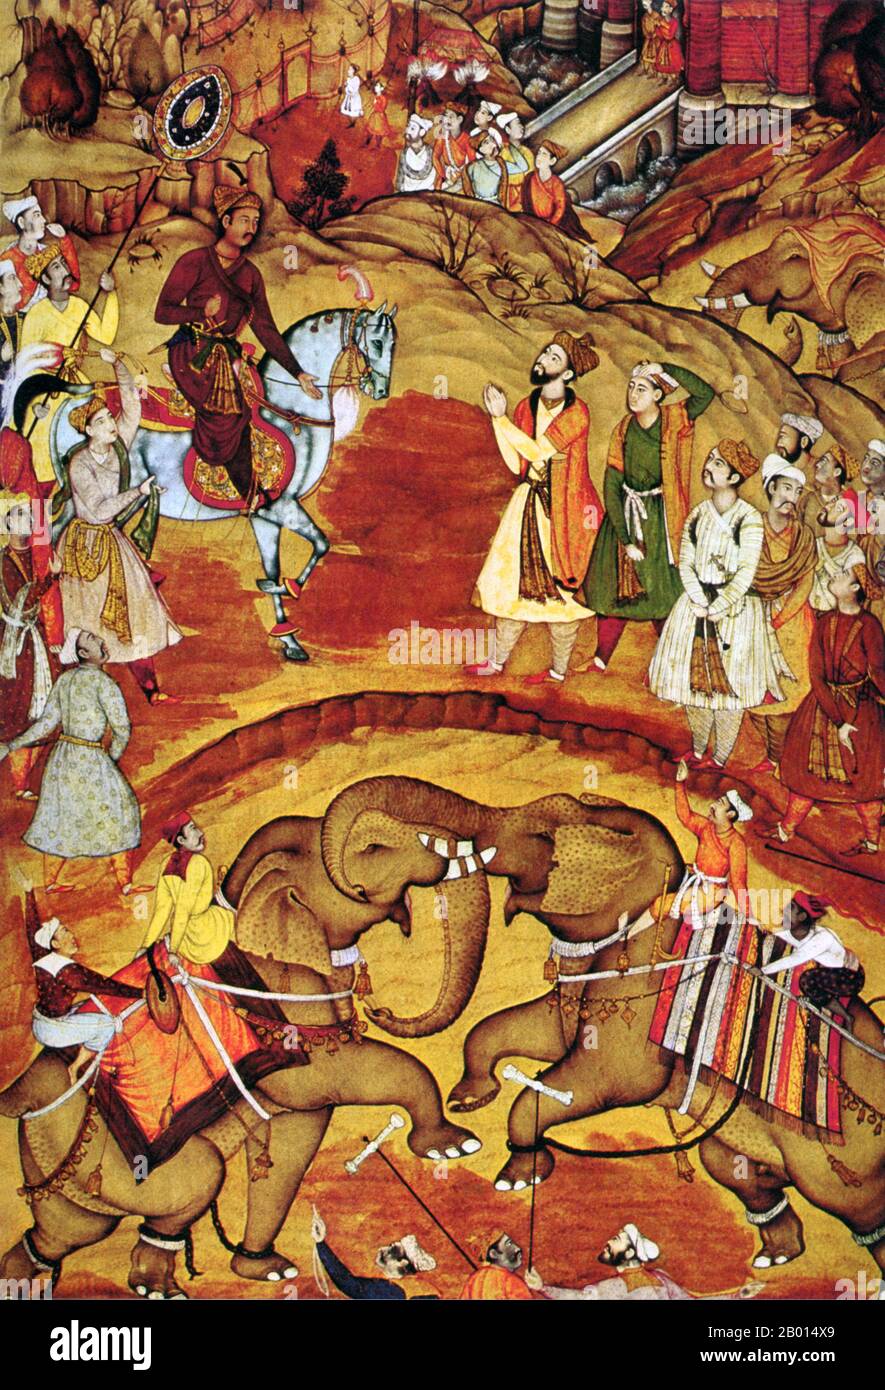 Inde: L'empereur Akbar reçoit la nouvelle que son deuxième fils est né en regardant un combat d'éléphant, 1570. Jalaluddin Muhammad Akbar (15 octobre 1542 - 13 octobre 1605), également connu sous le nom de Shahanshah Akbar-e-Azam ou Akbar le Grand, était le troisième empereur moghol. Il était d'origine timuride : le fils d'Humayun, et le petit-fils de Babur, le dirigeant qui fonda la dynastie des Mughal en Inde. À la fin de son règne en 1605, l'empire moghol couvrait la majeure partie du nord et du centre de l'Inde et était l'un des empires les plus puissants de son époque. Banque D'Images